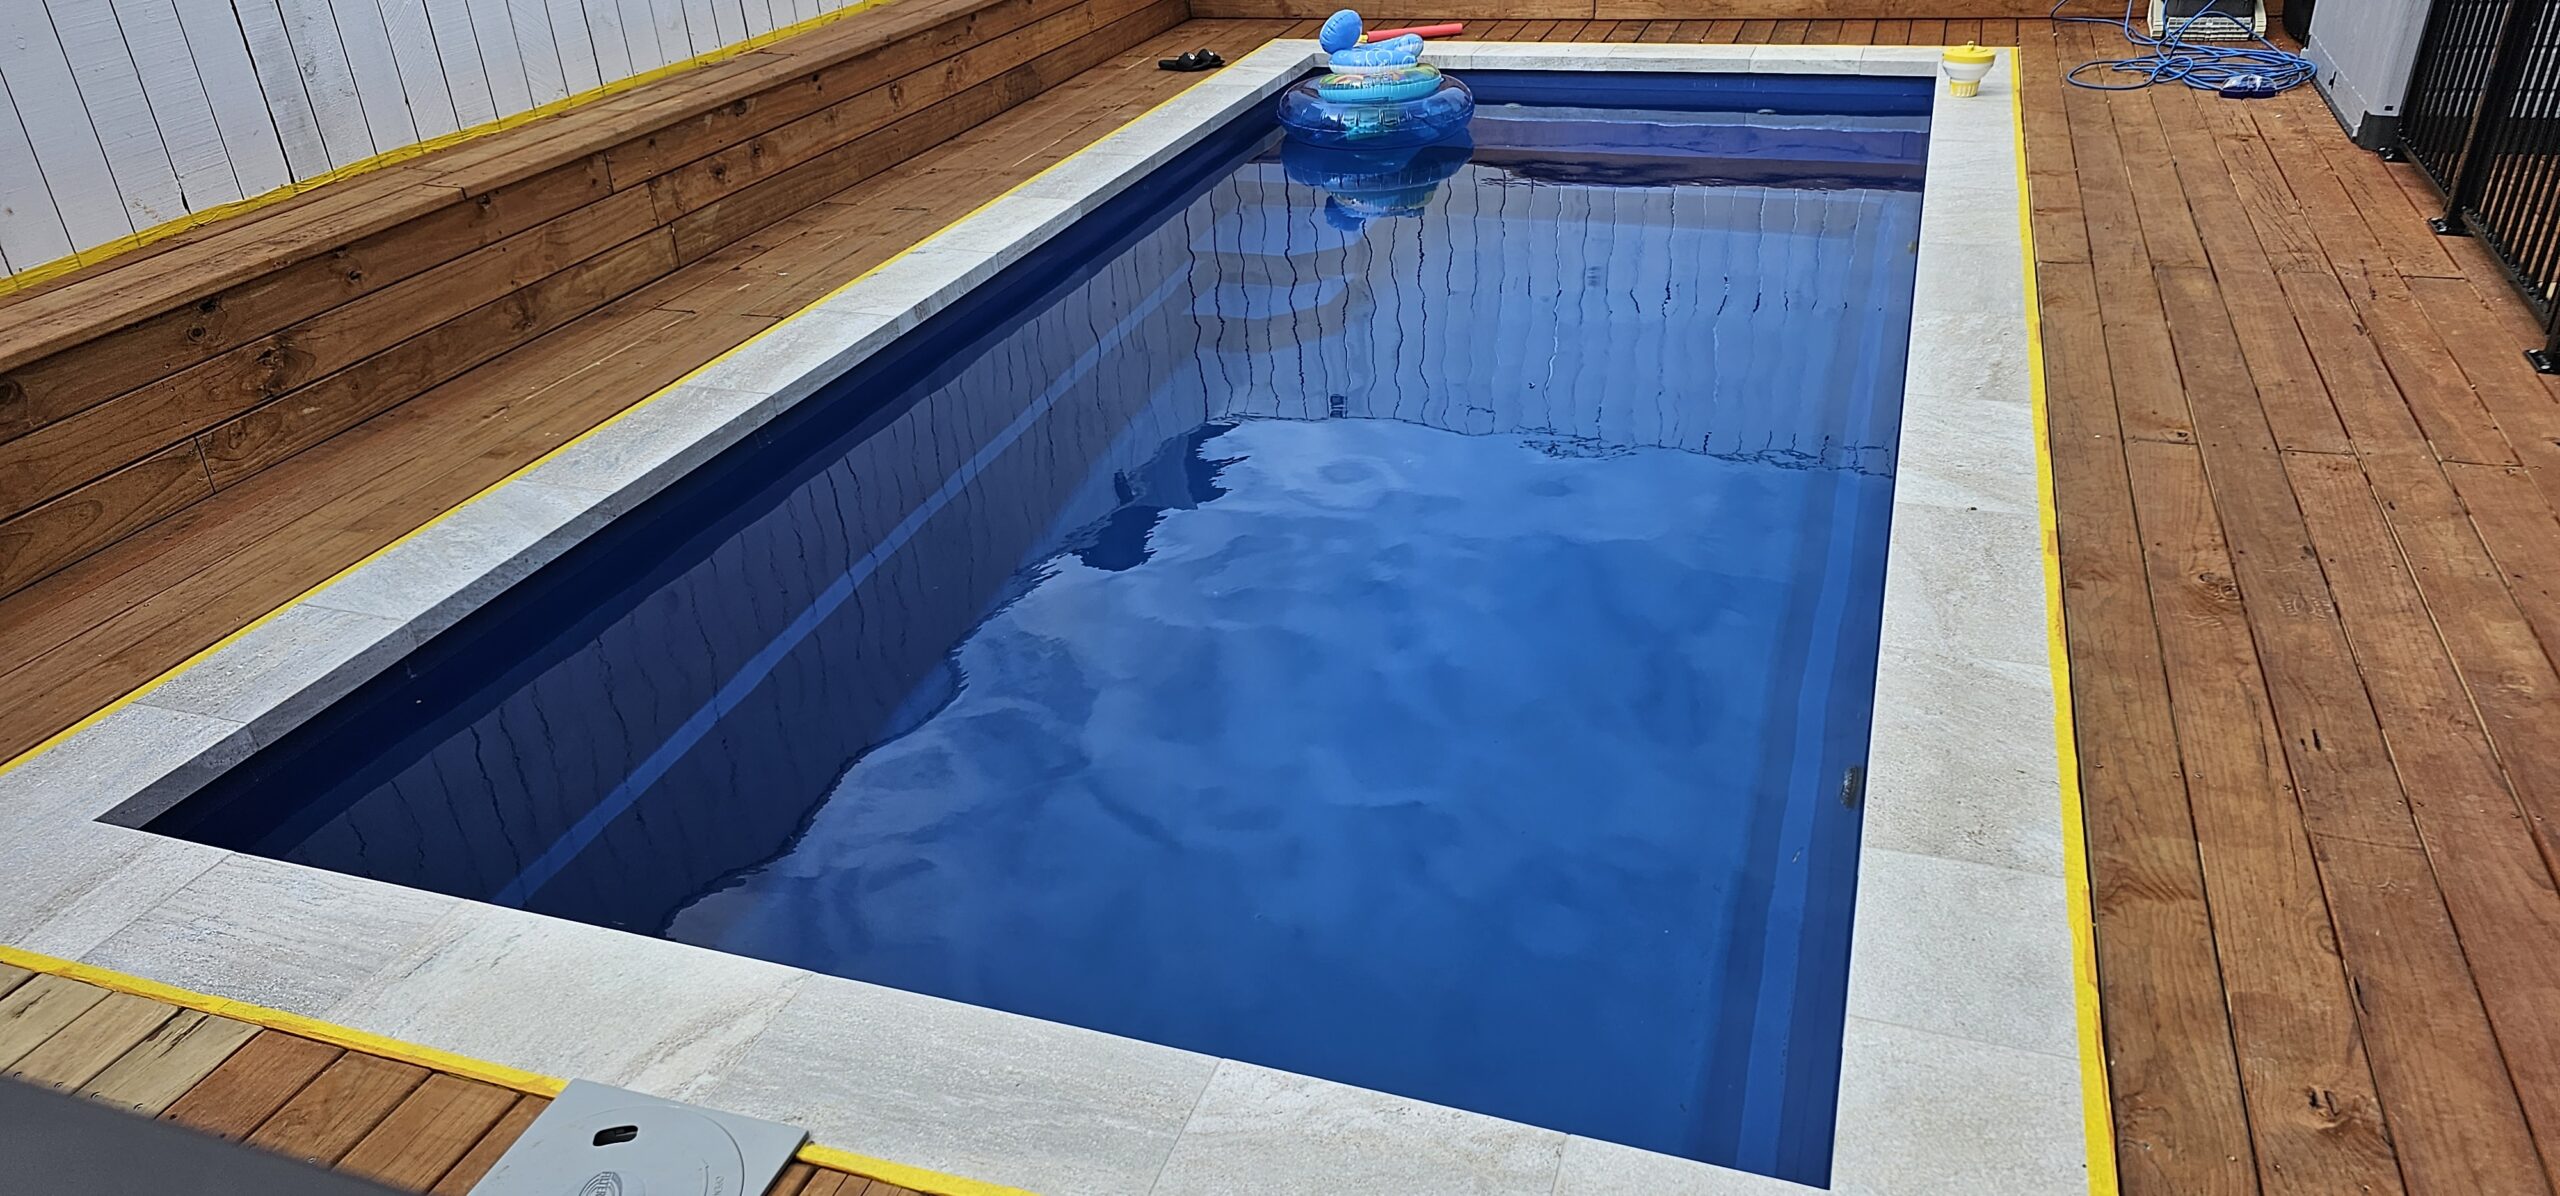 6.5 meter fibreglass swimming pool in the colour Ocean Blue